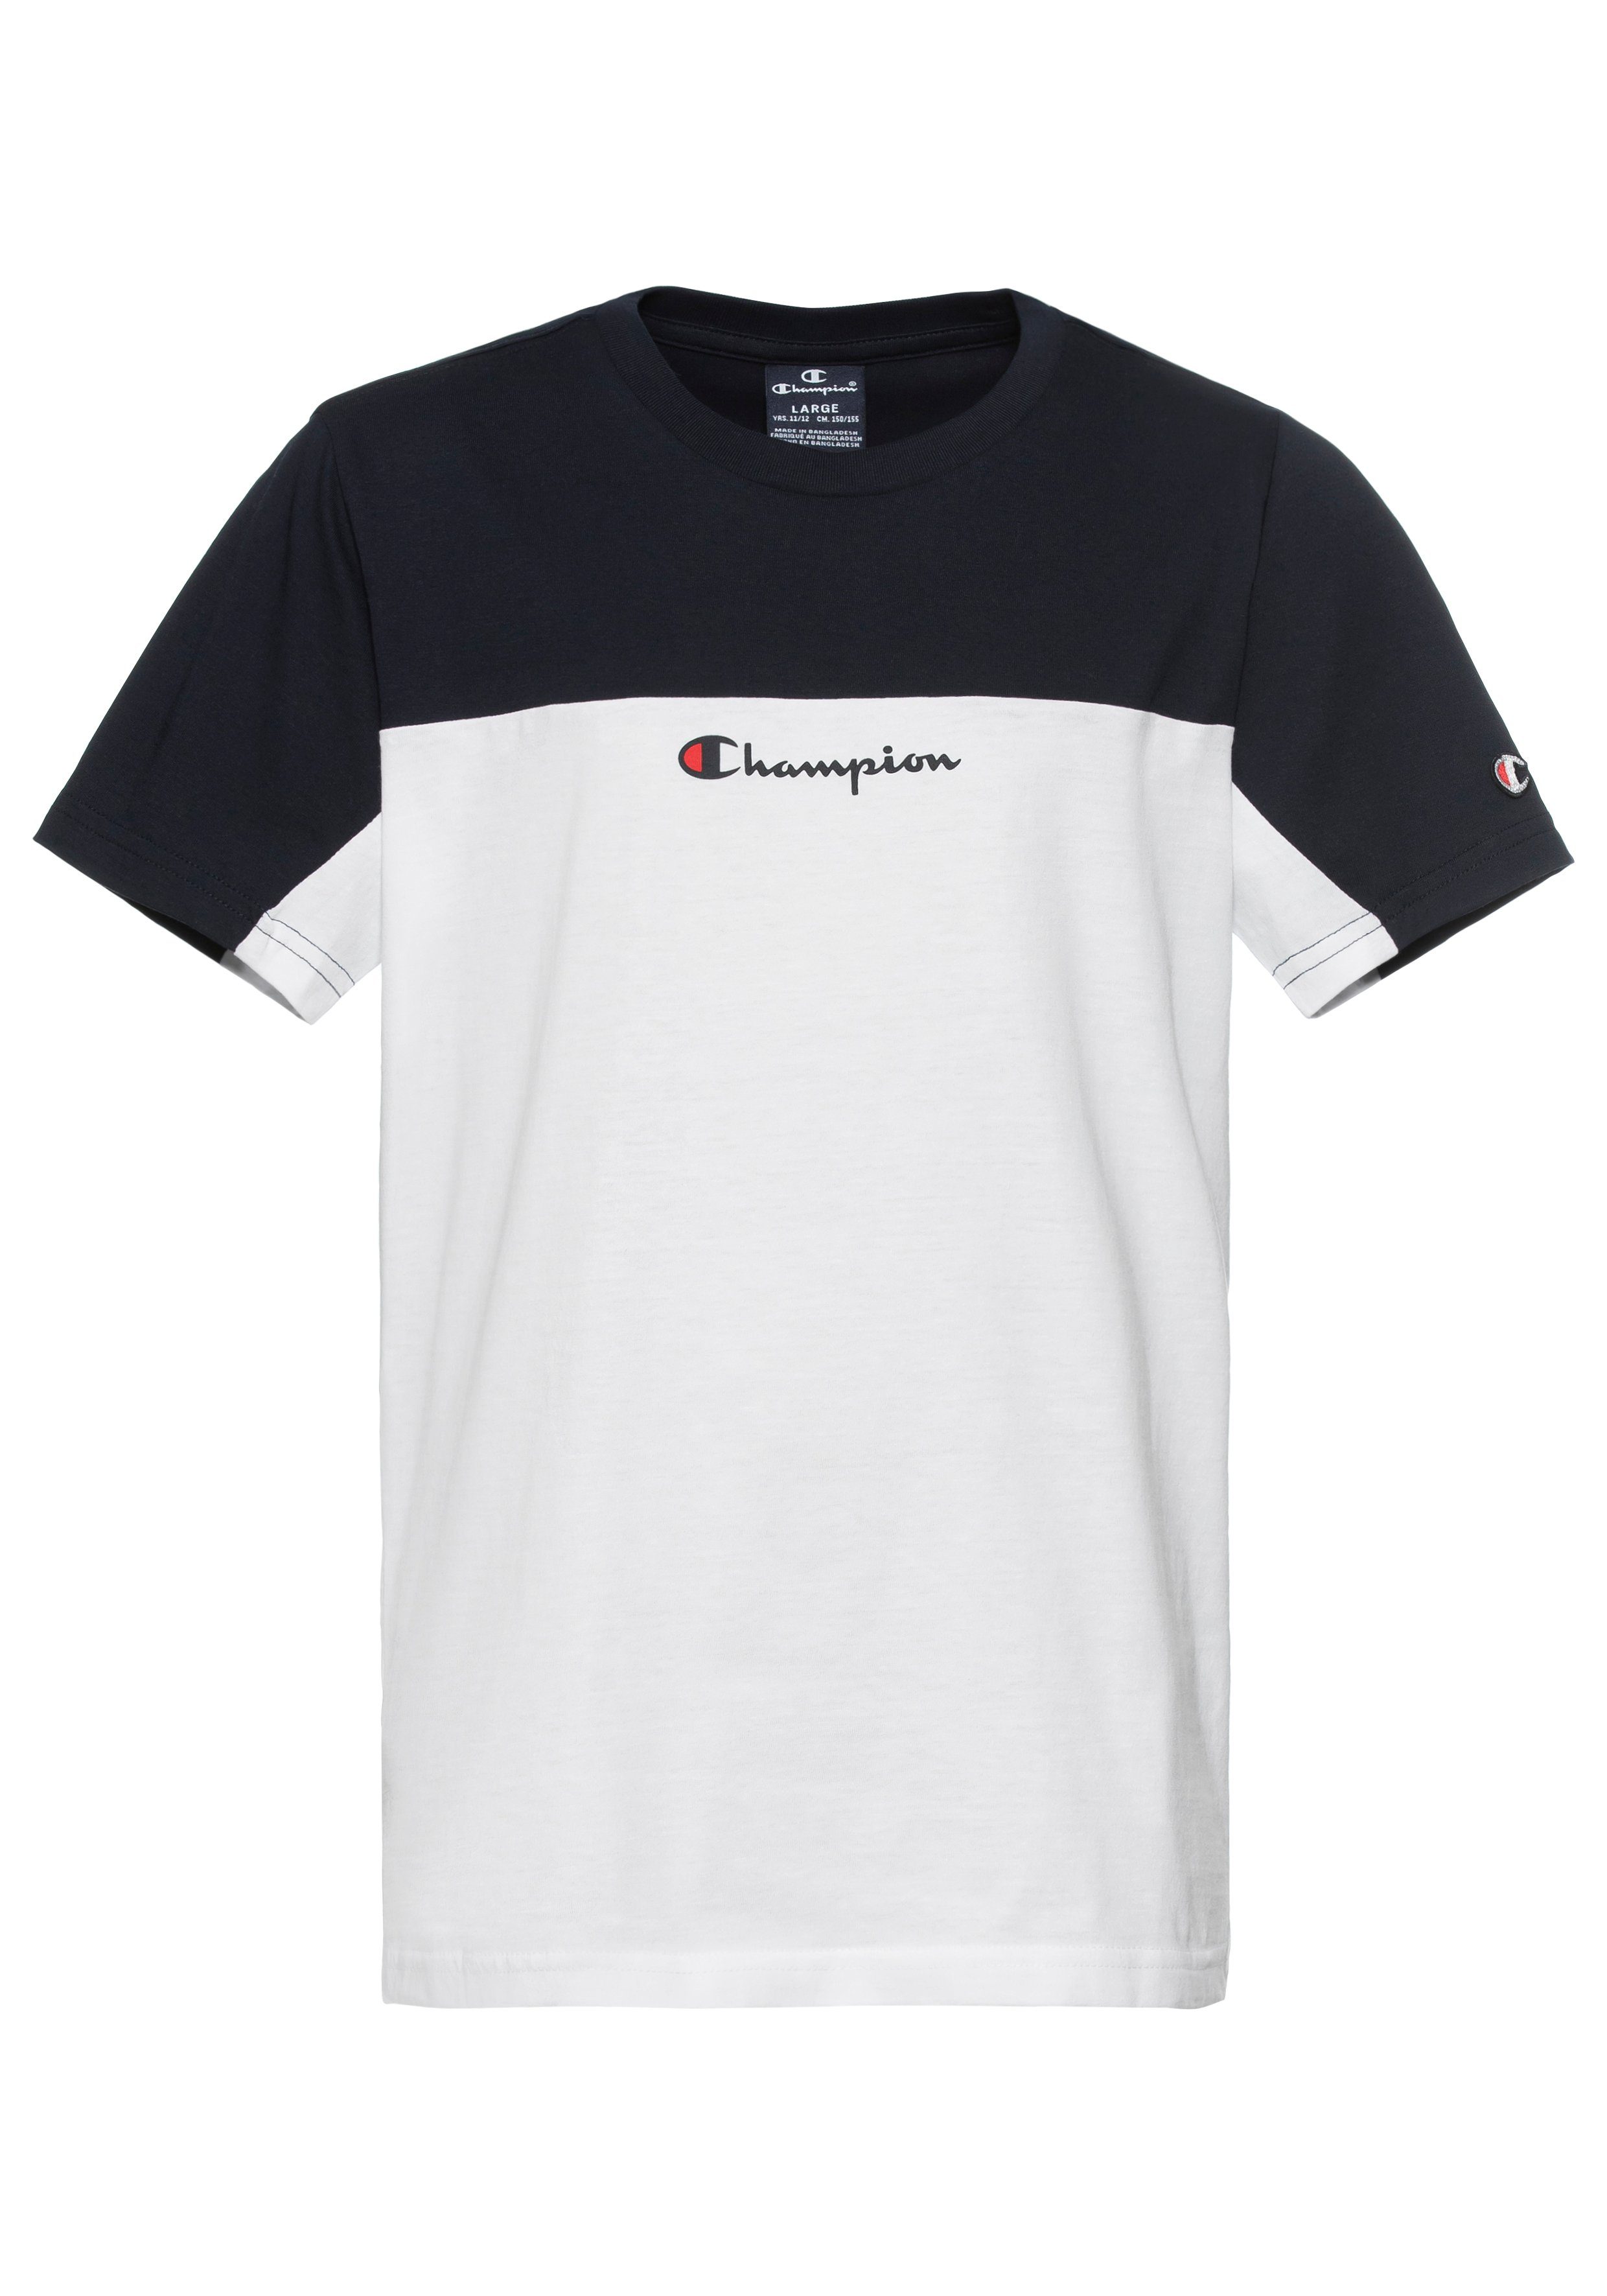 Champion T-shirt met logo wit donkerblauw Jongens Katoen Ronde hals Logo 146 152